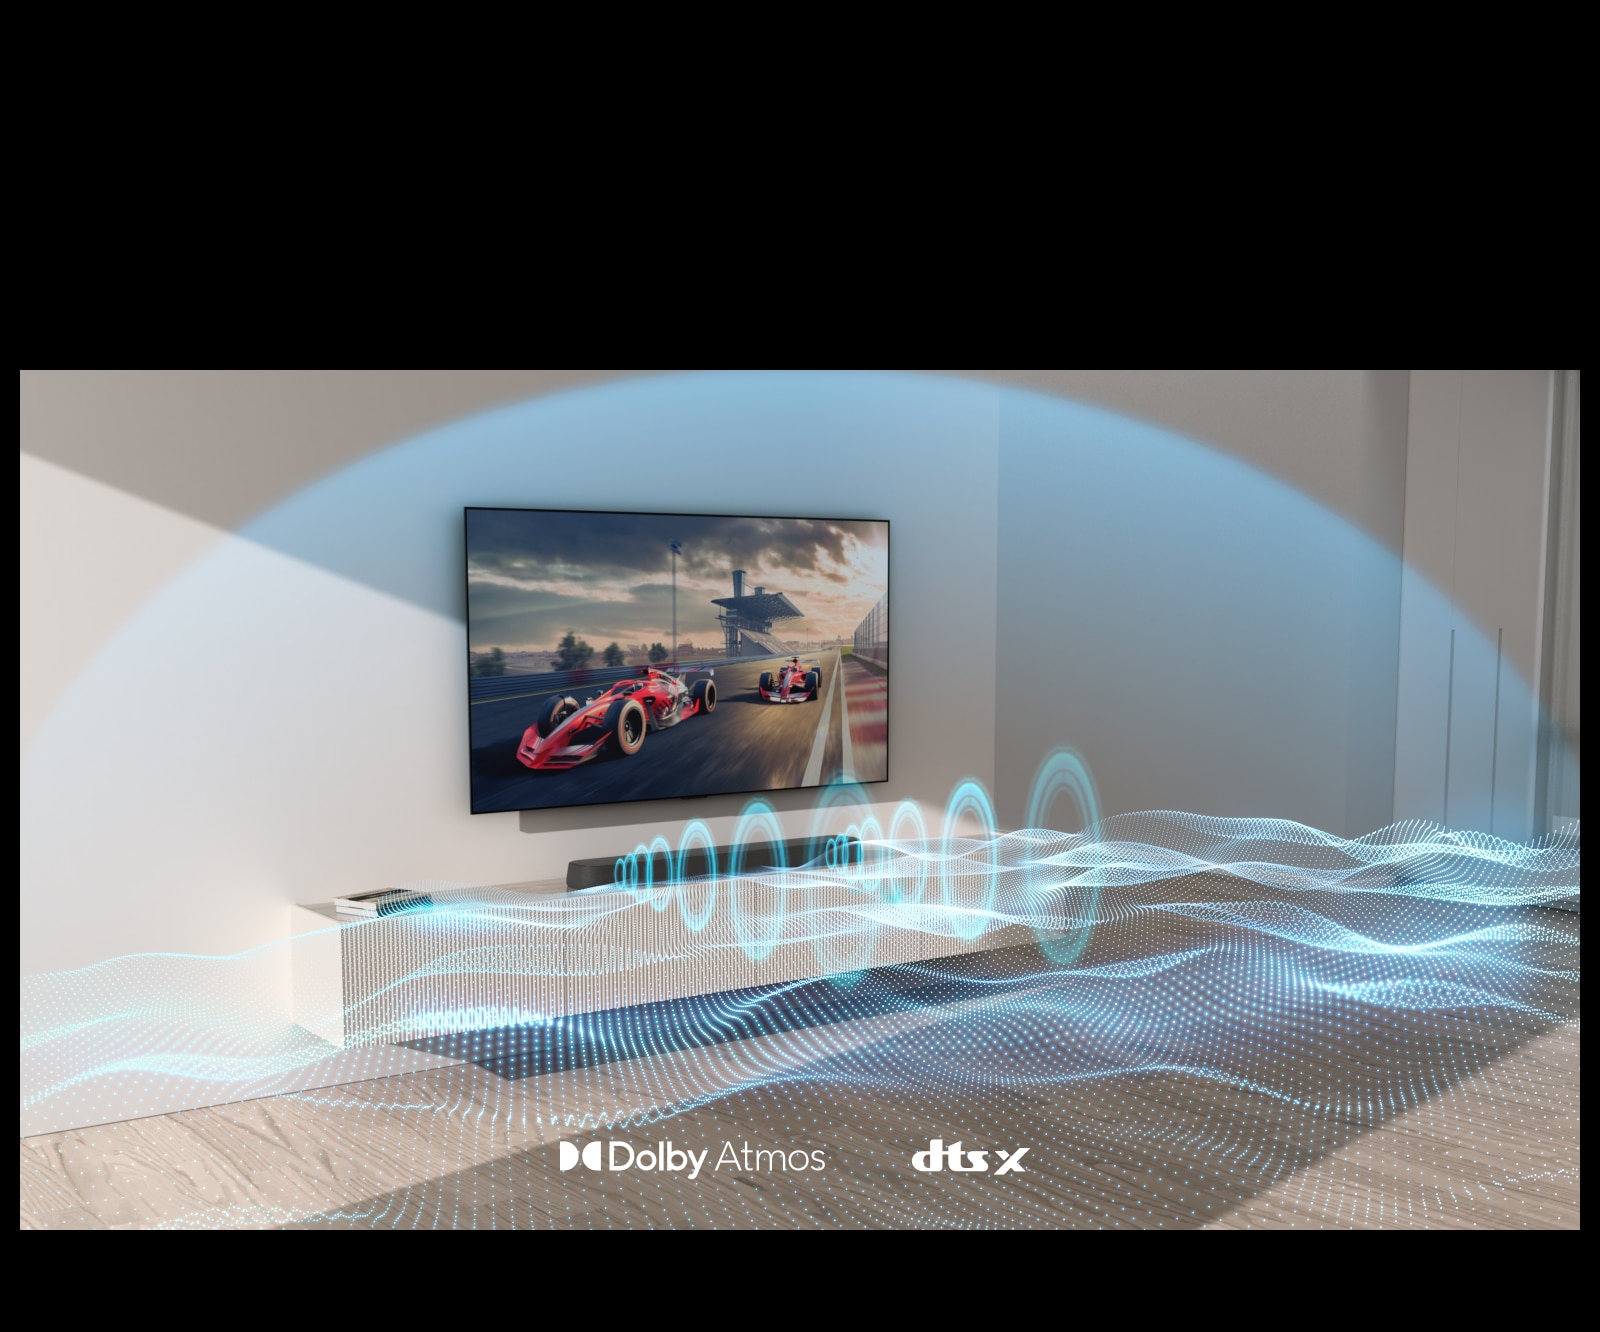 Et vægmonteret tv og soundbaren hænger på væggen med front mod højre side af billedet. Der kommer blå lydbølger med forskellige former fra soundbaren. En kuppelformet blå lydbølge dækker dem begge fuldt ud.